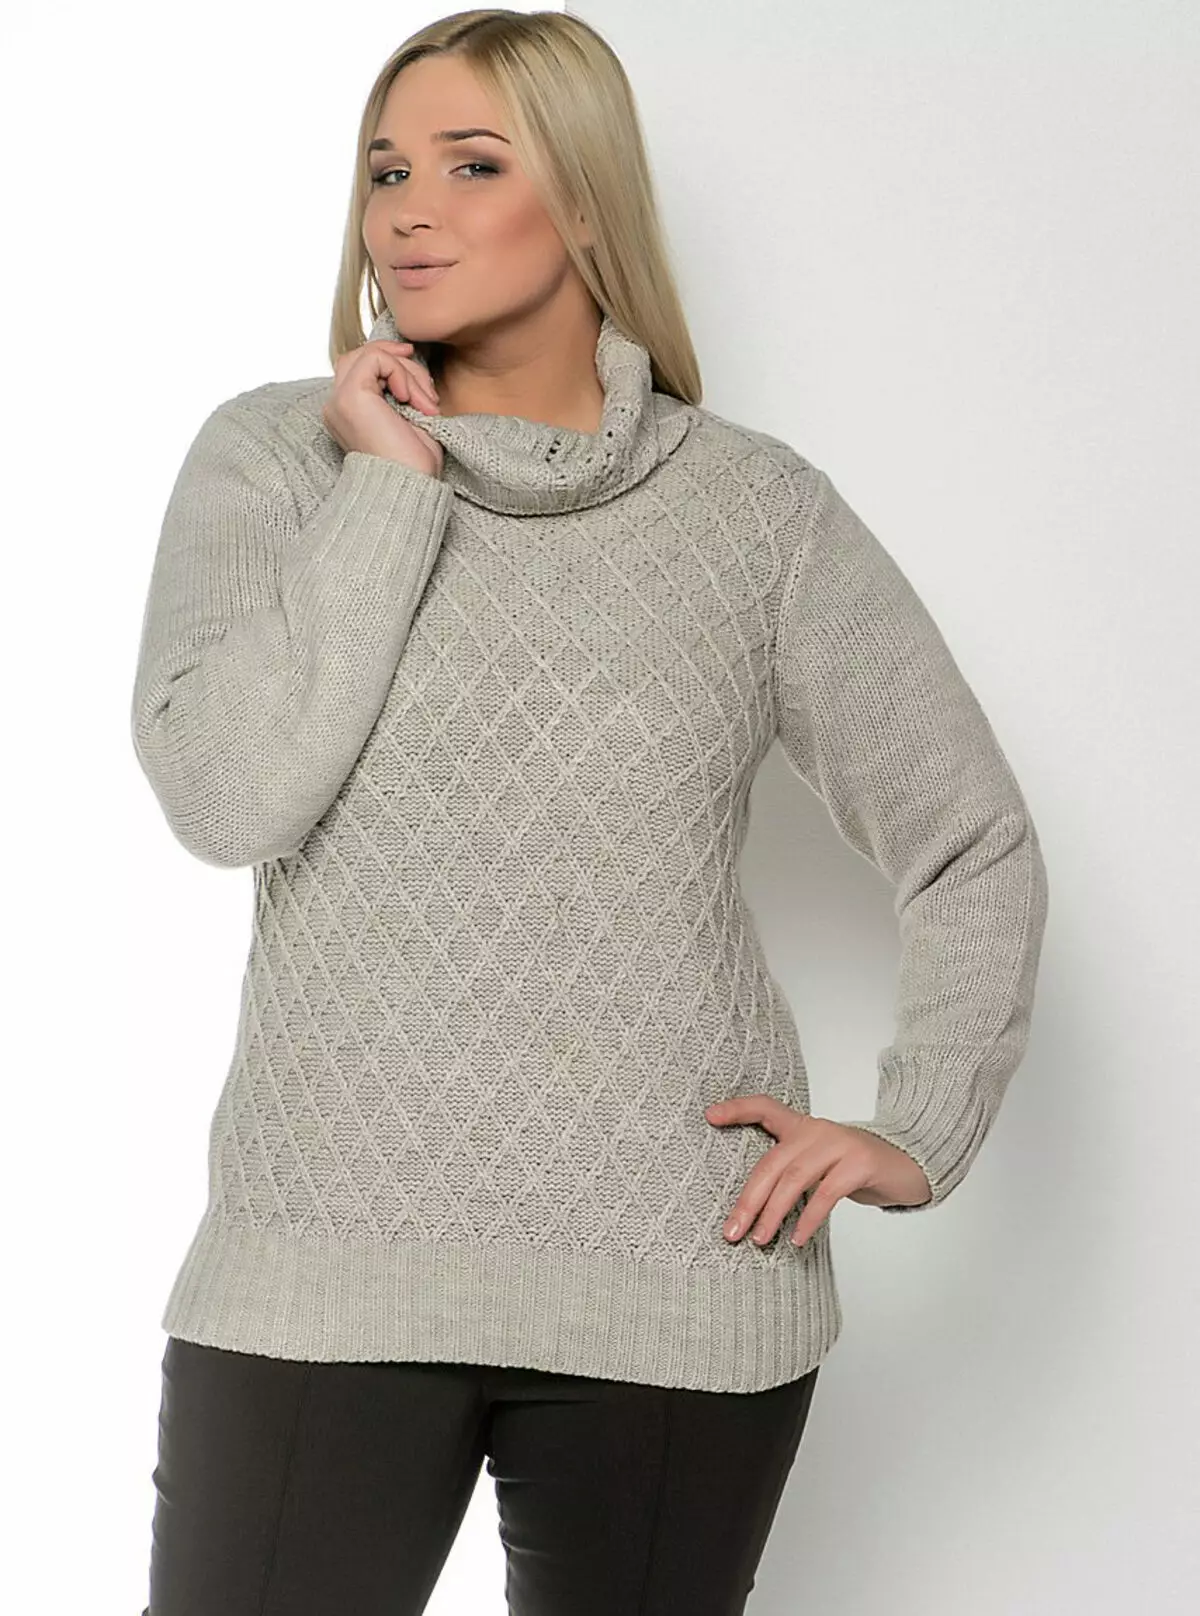 Sweaters: menene, bambanci daga yumper, Cardigan da Sweatshirt 1012_30